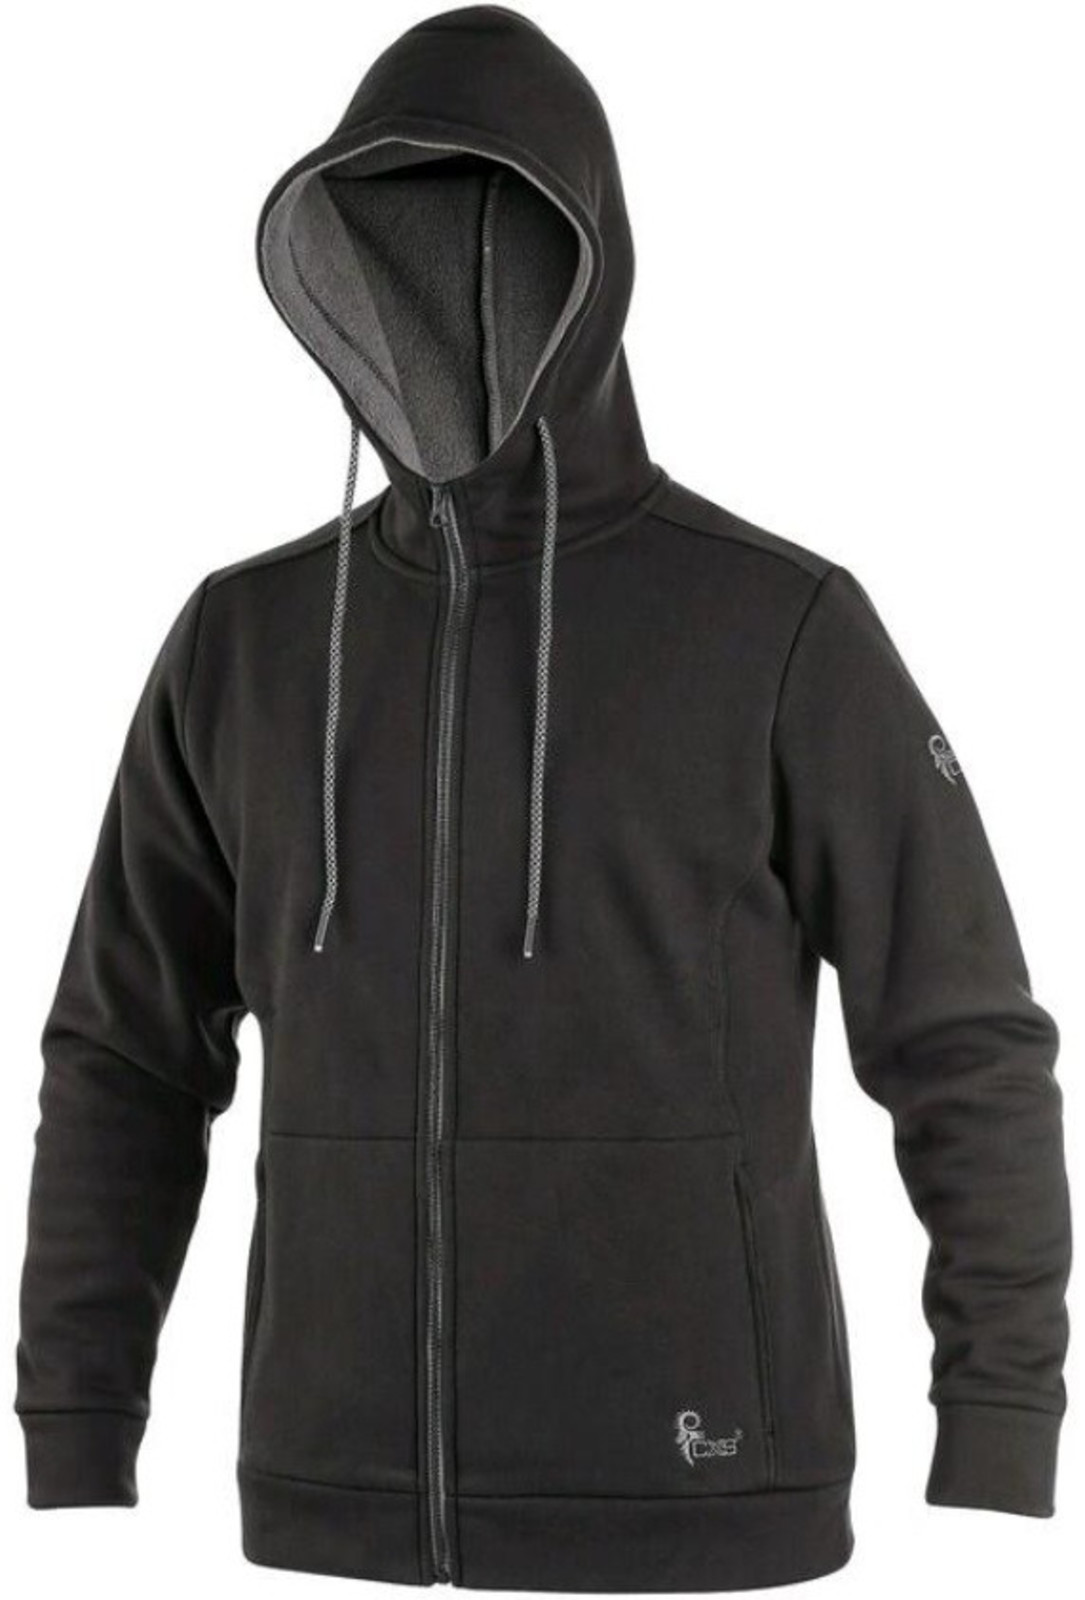 Mikina na zips s kapucňou CXS Harrison - veľkosť: L, farba: čierna/sivá